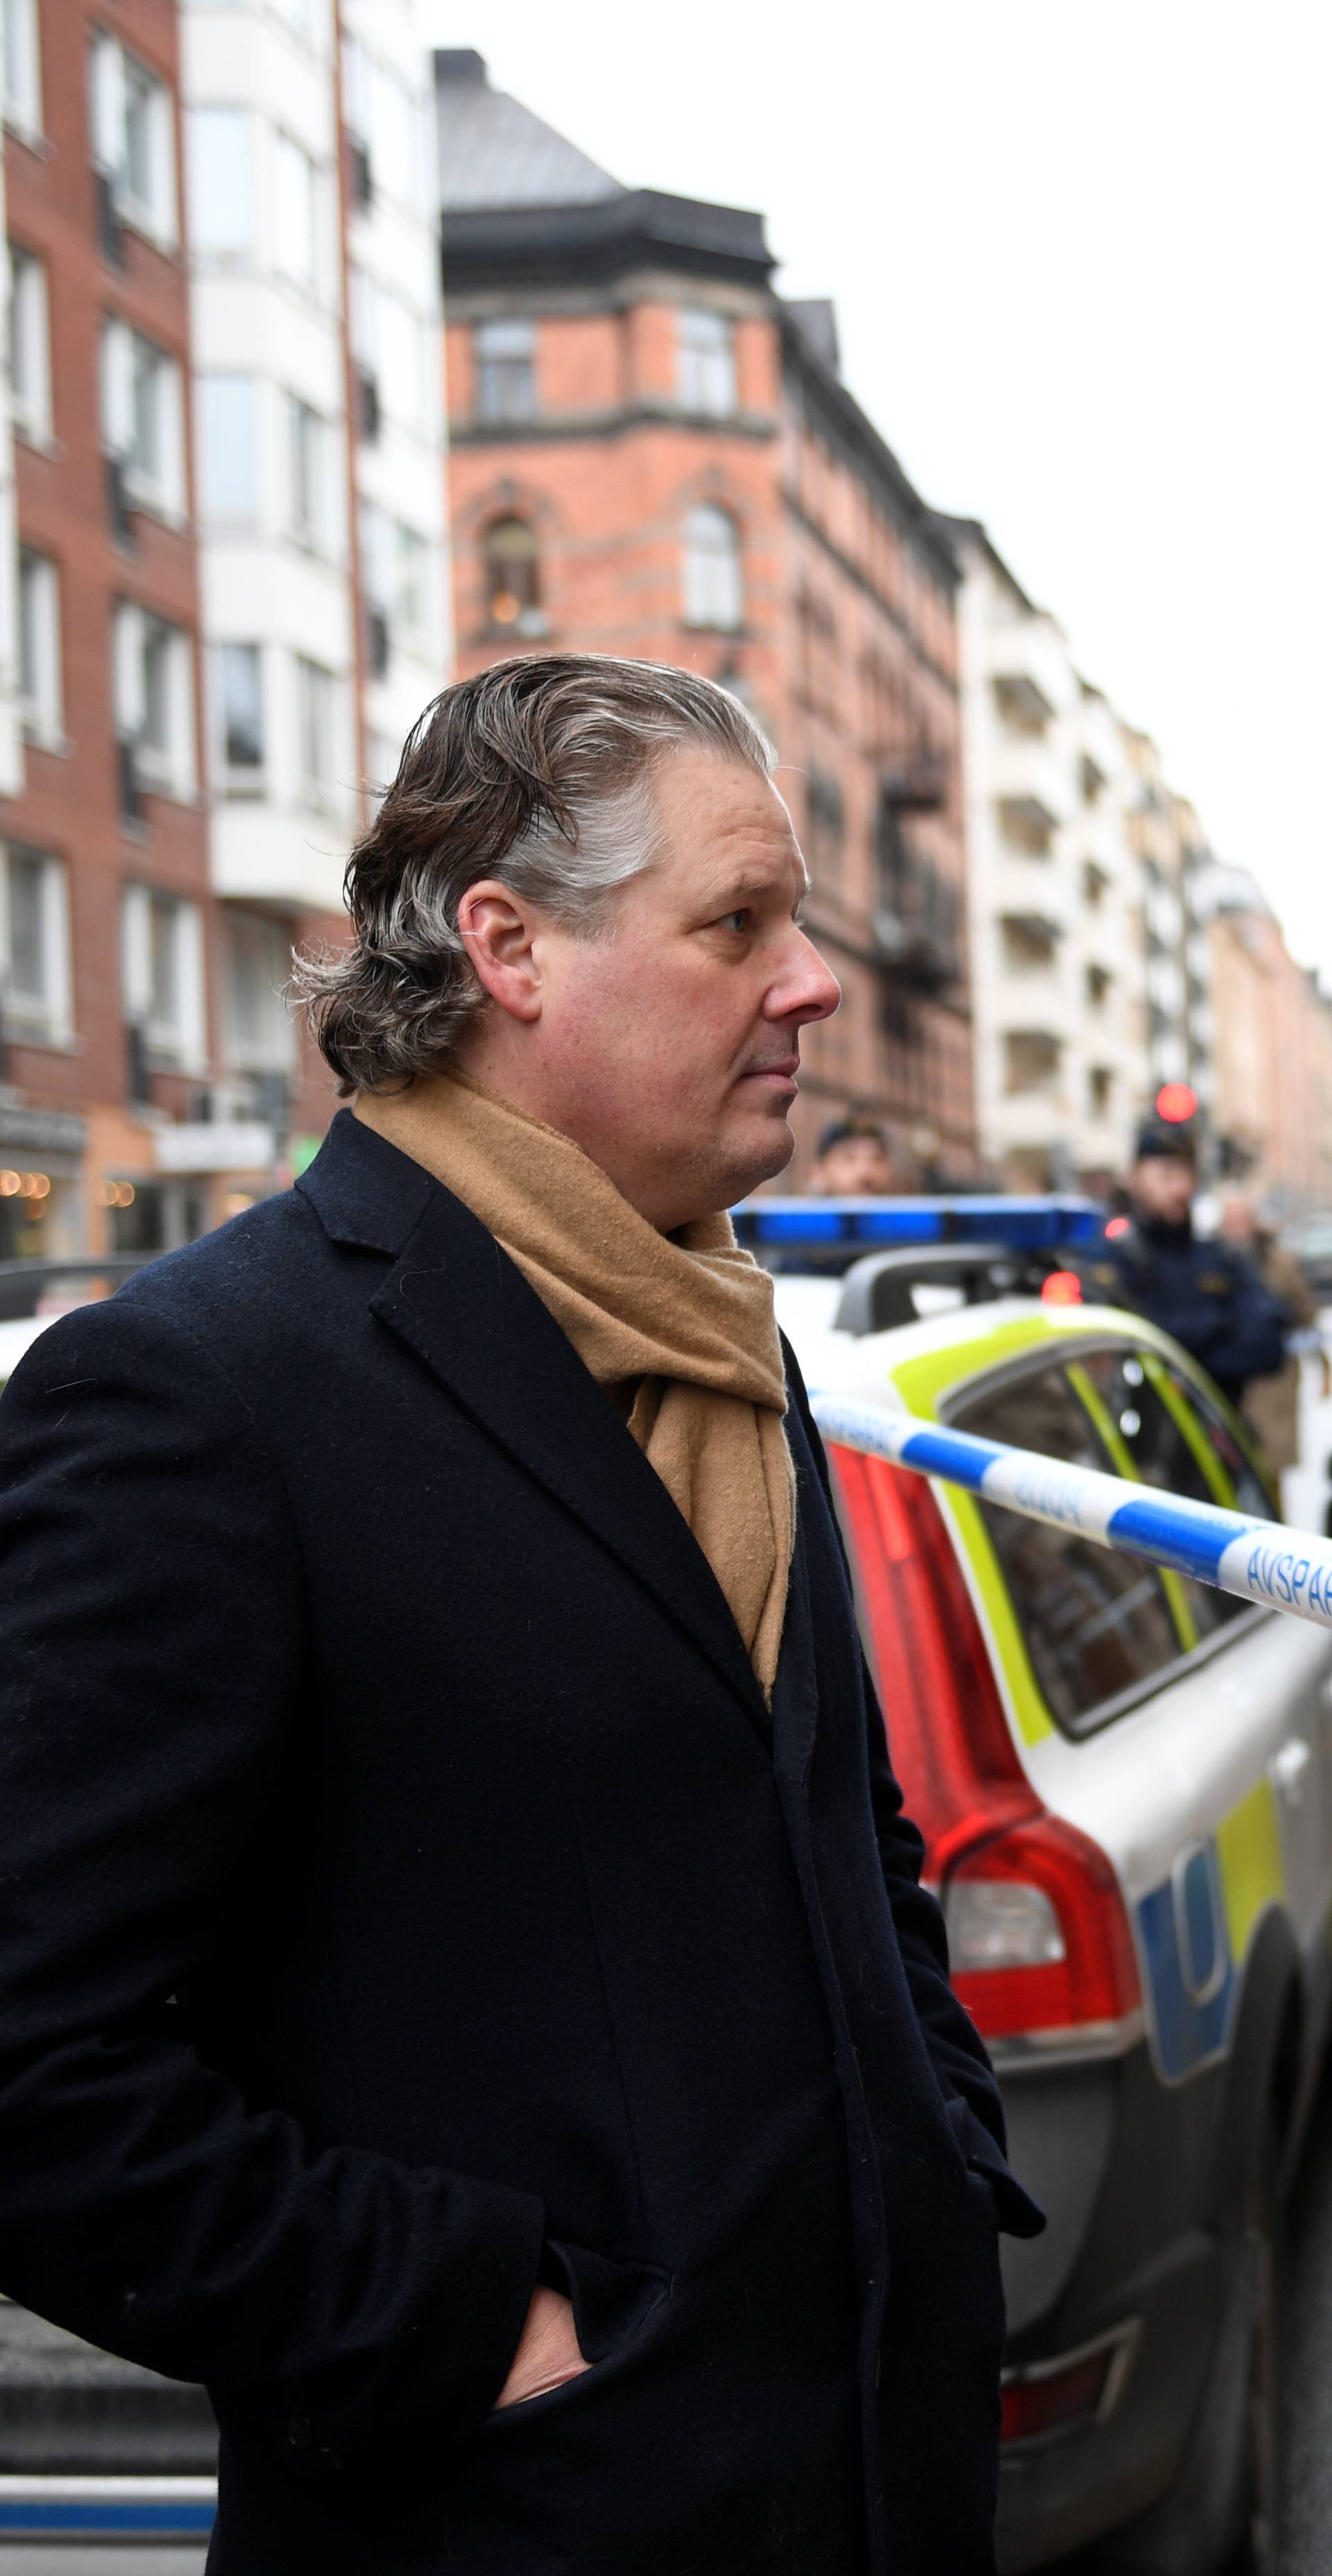 Art gallery owner Peder Enstrom stands behind police cordon after Salvador Dali works have been stolen, in Stockholm